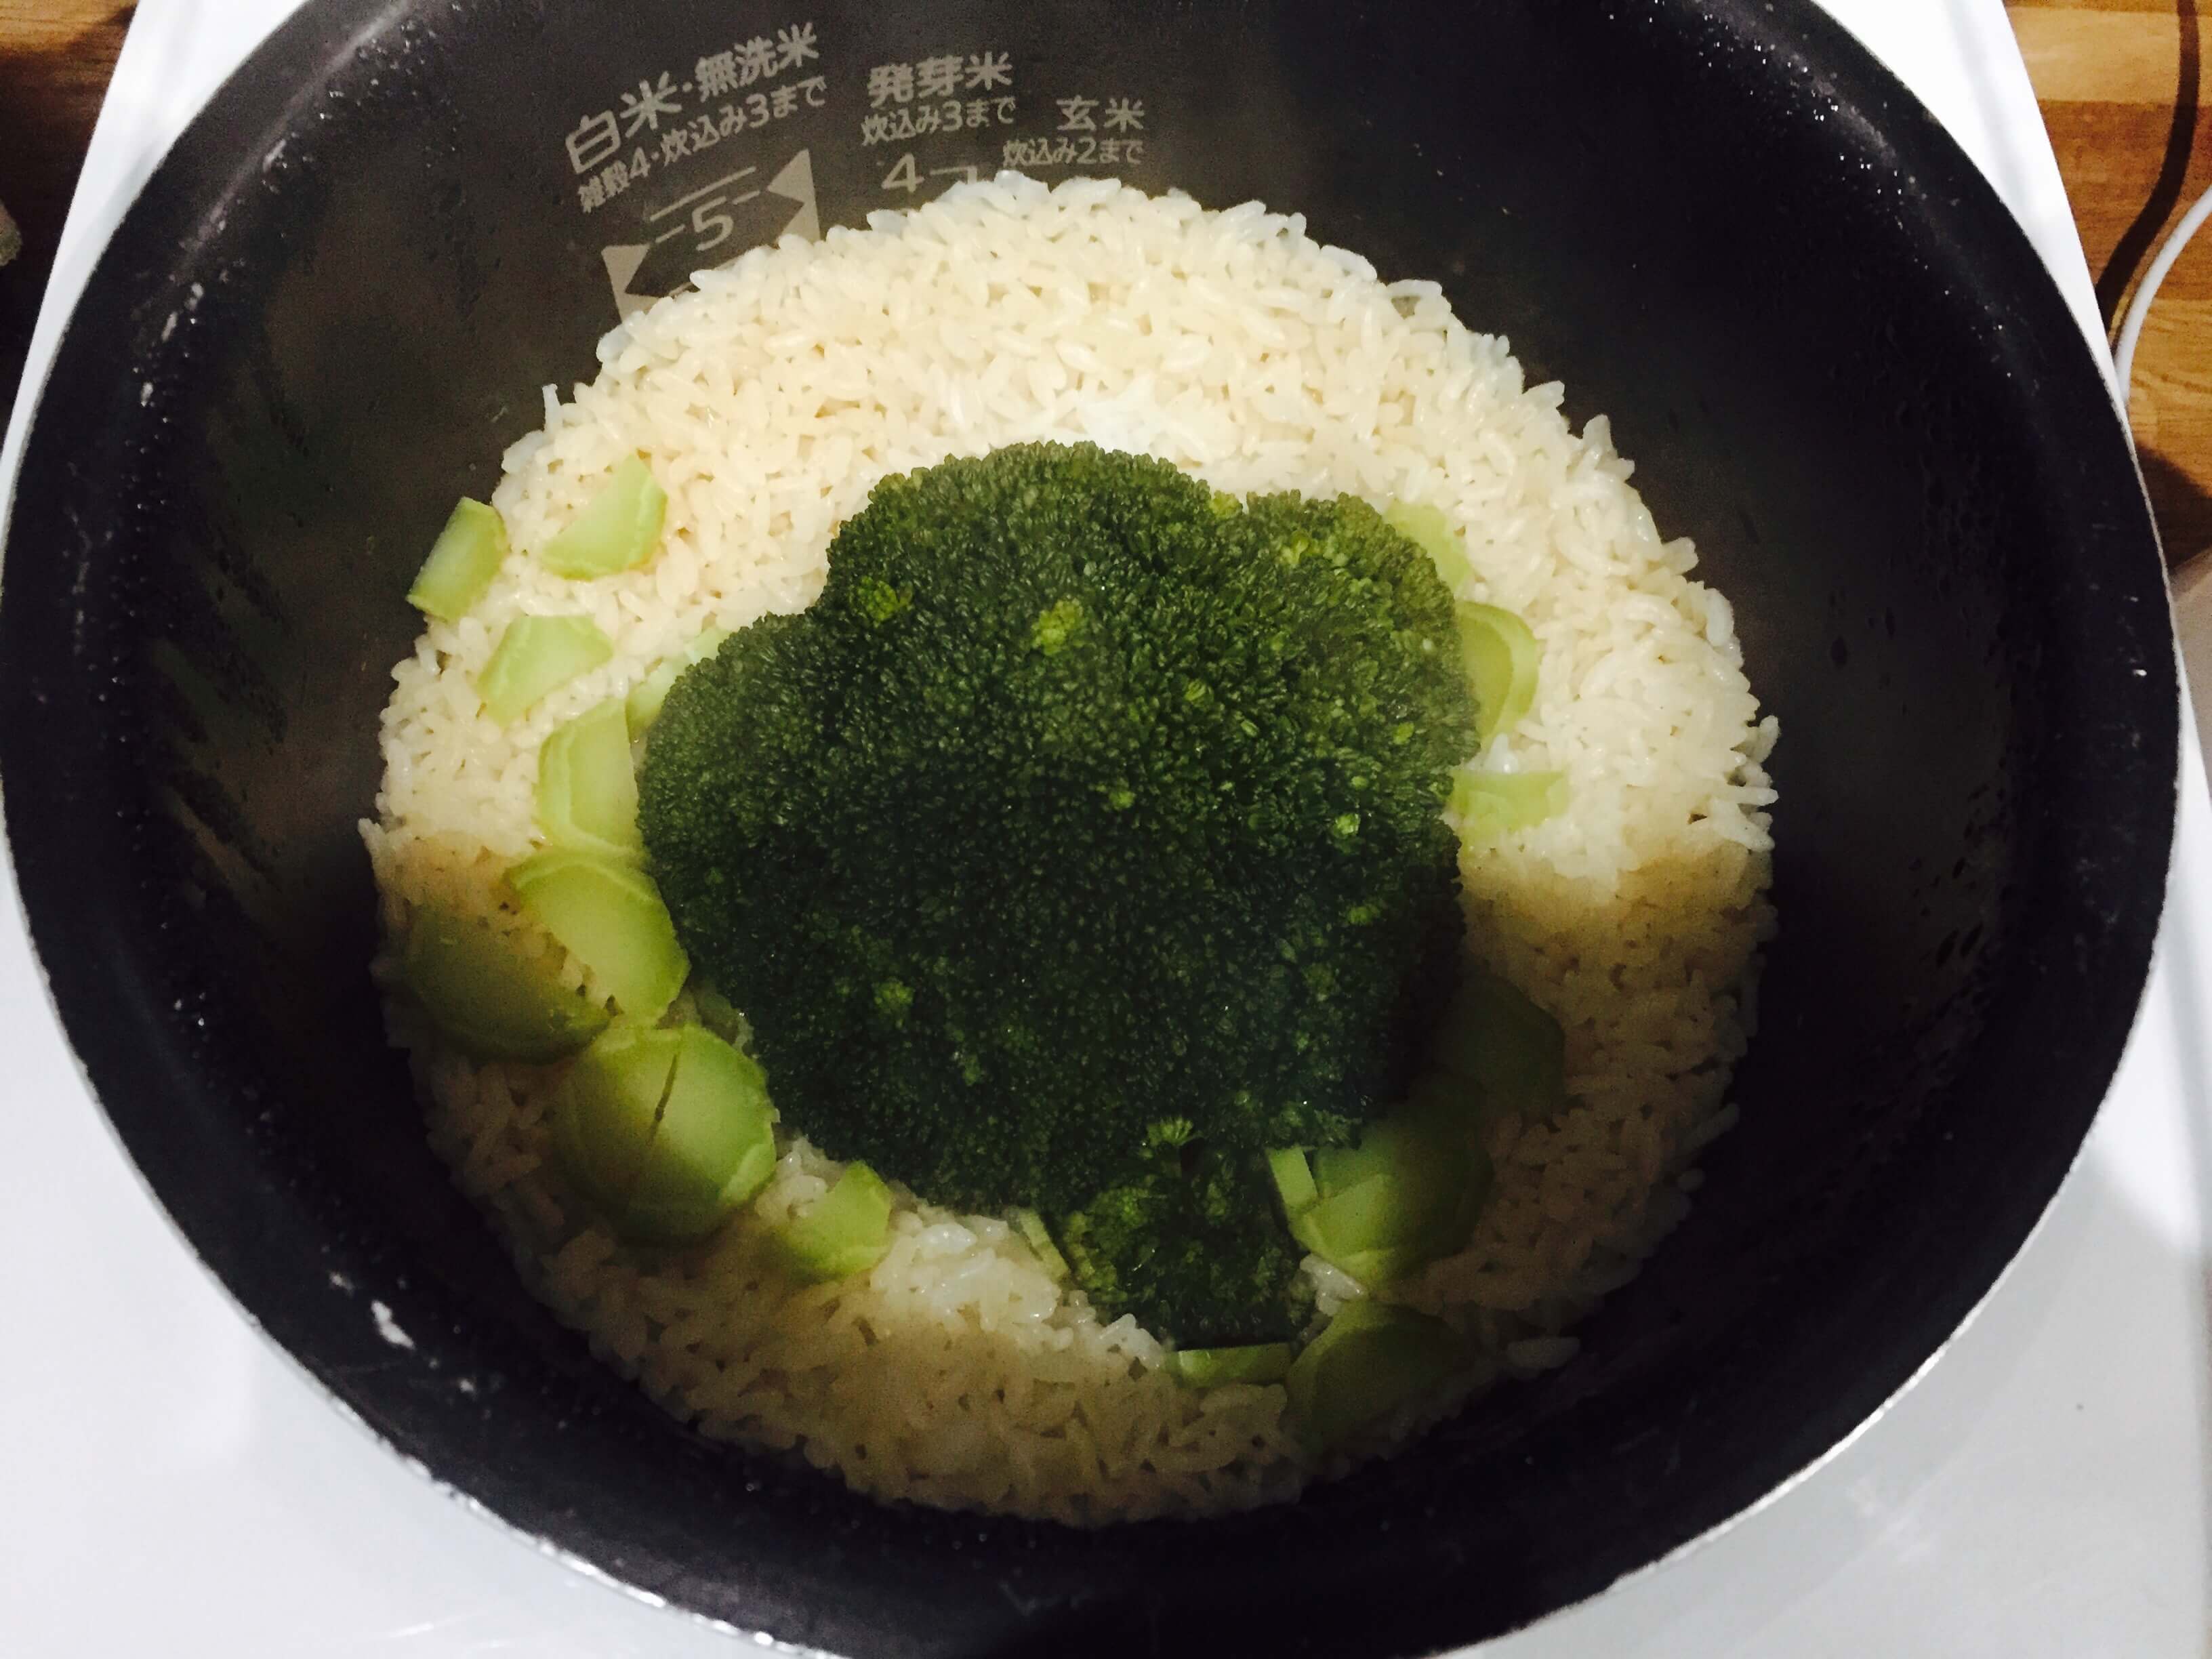 ブロッコリーご飯作り方3